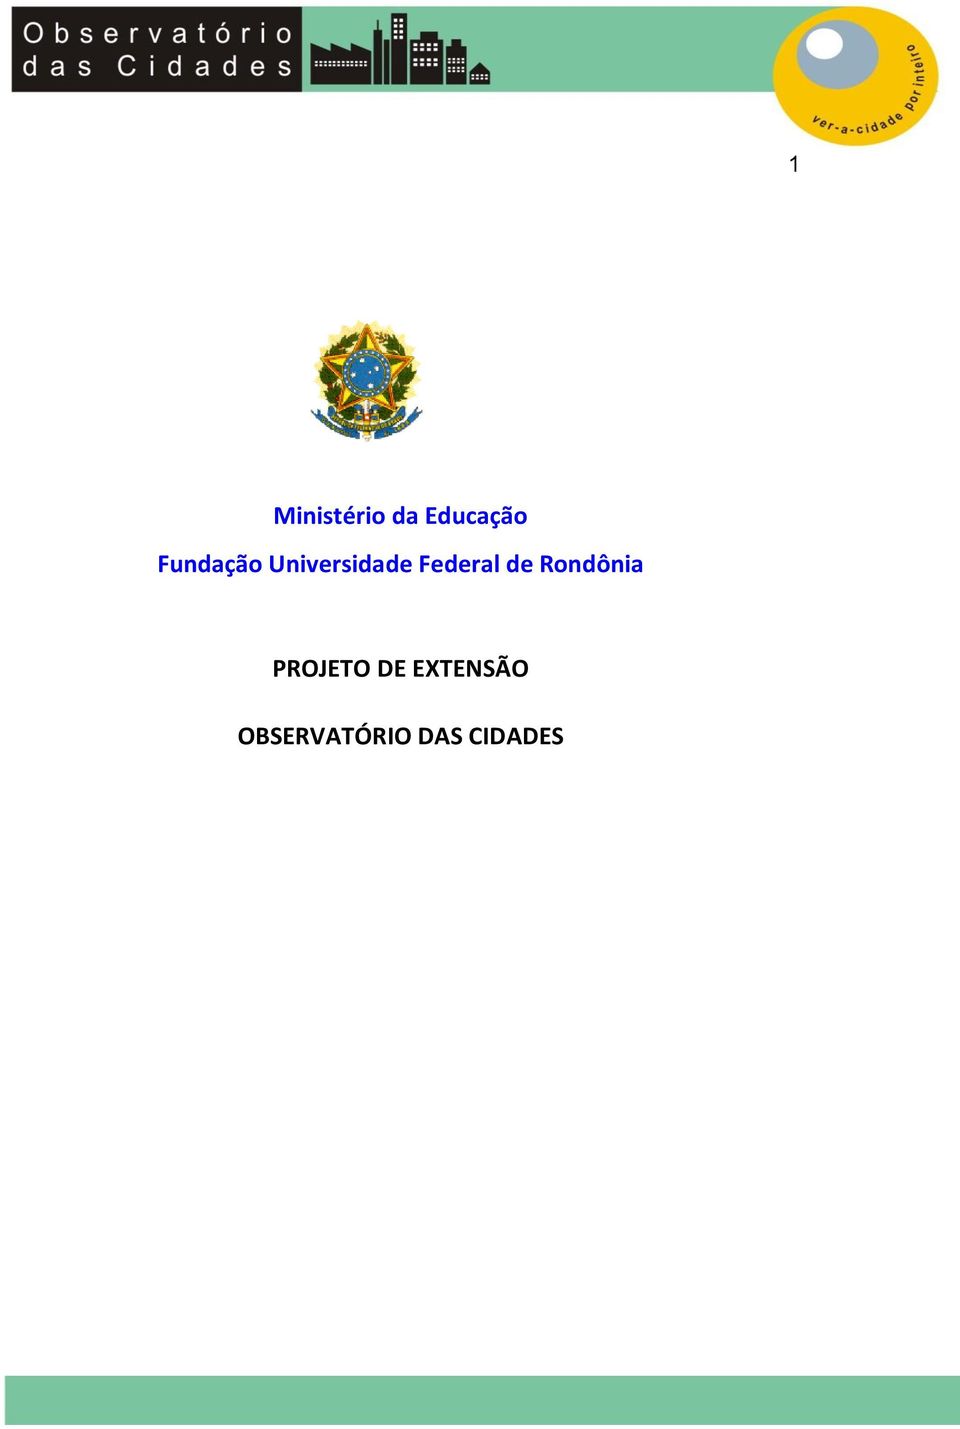 Federal de Rondônia PROJETO